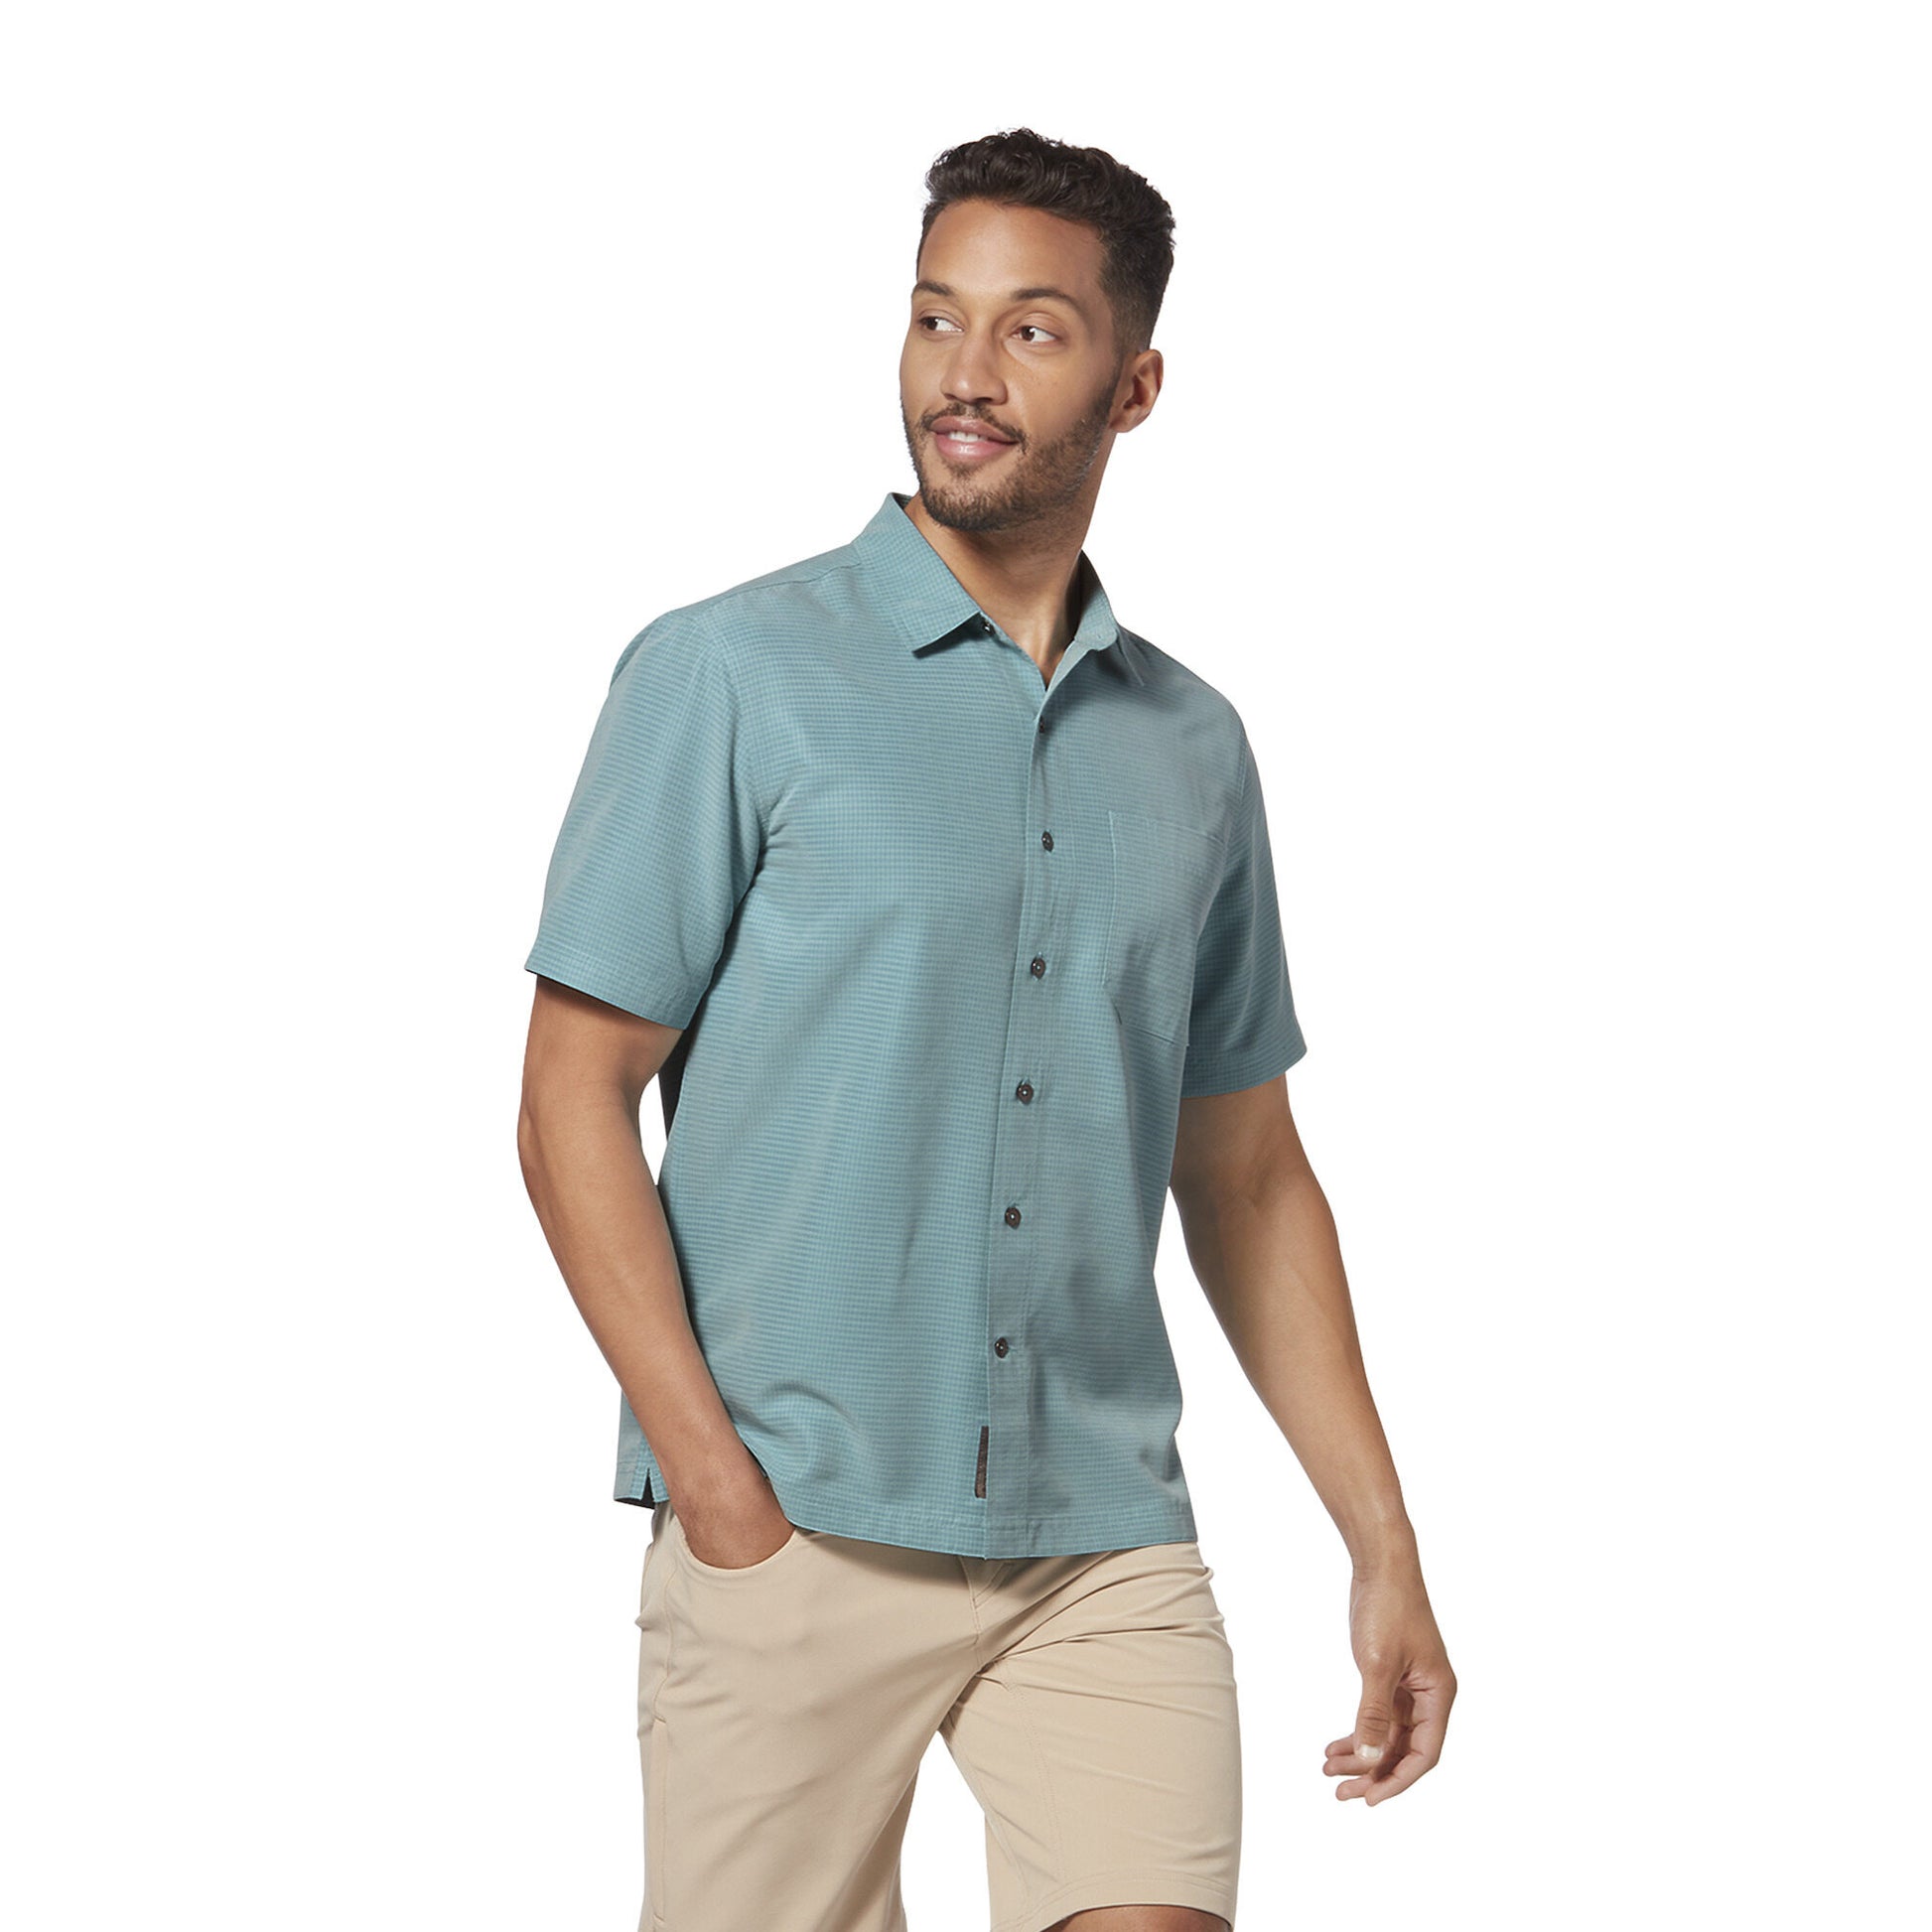 Men's Desert Pucker Dry Short Sleeve Shirt